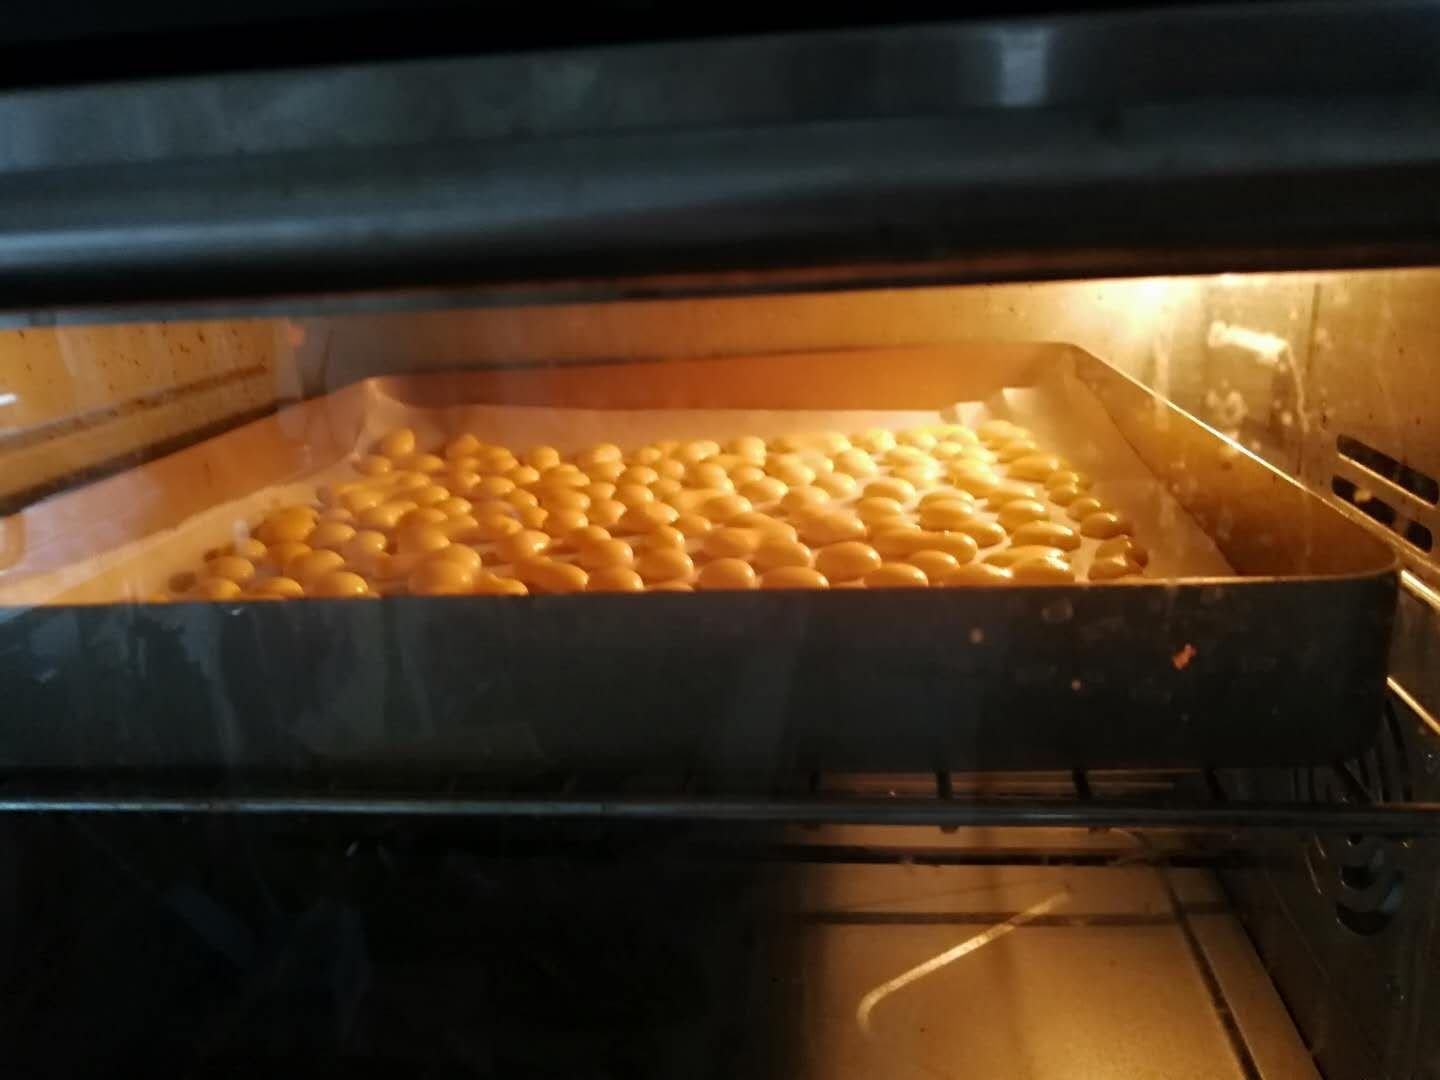 蛋黄小溶豆